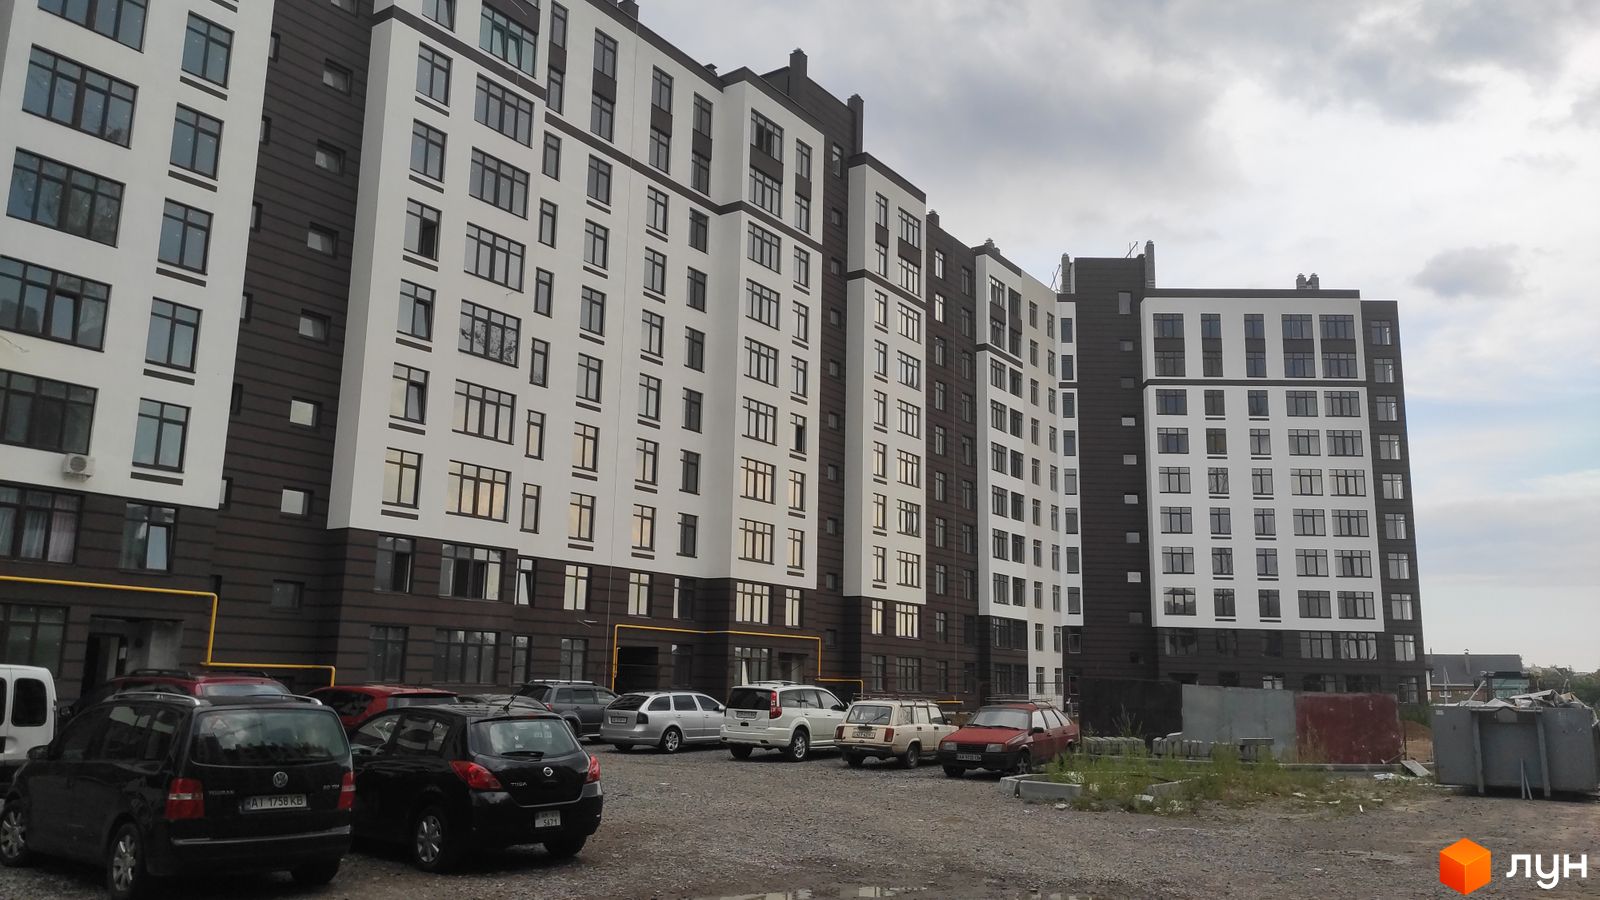 Моніторинг будівництва ЖК Празький квартал 2 - Ракурс 1, серпень 2020